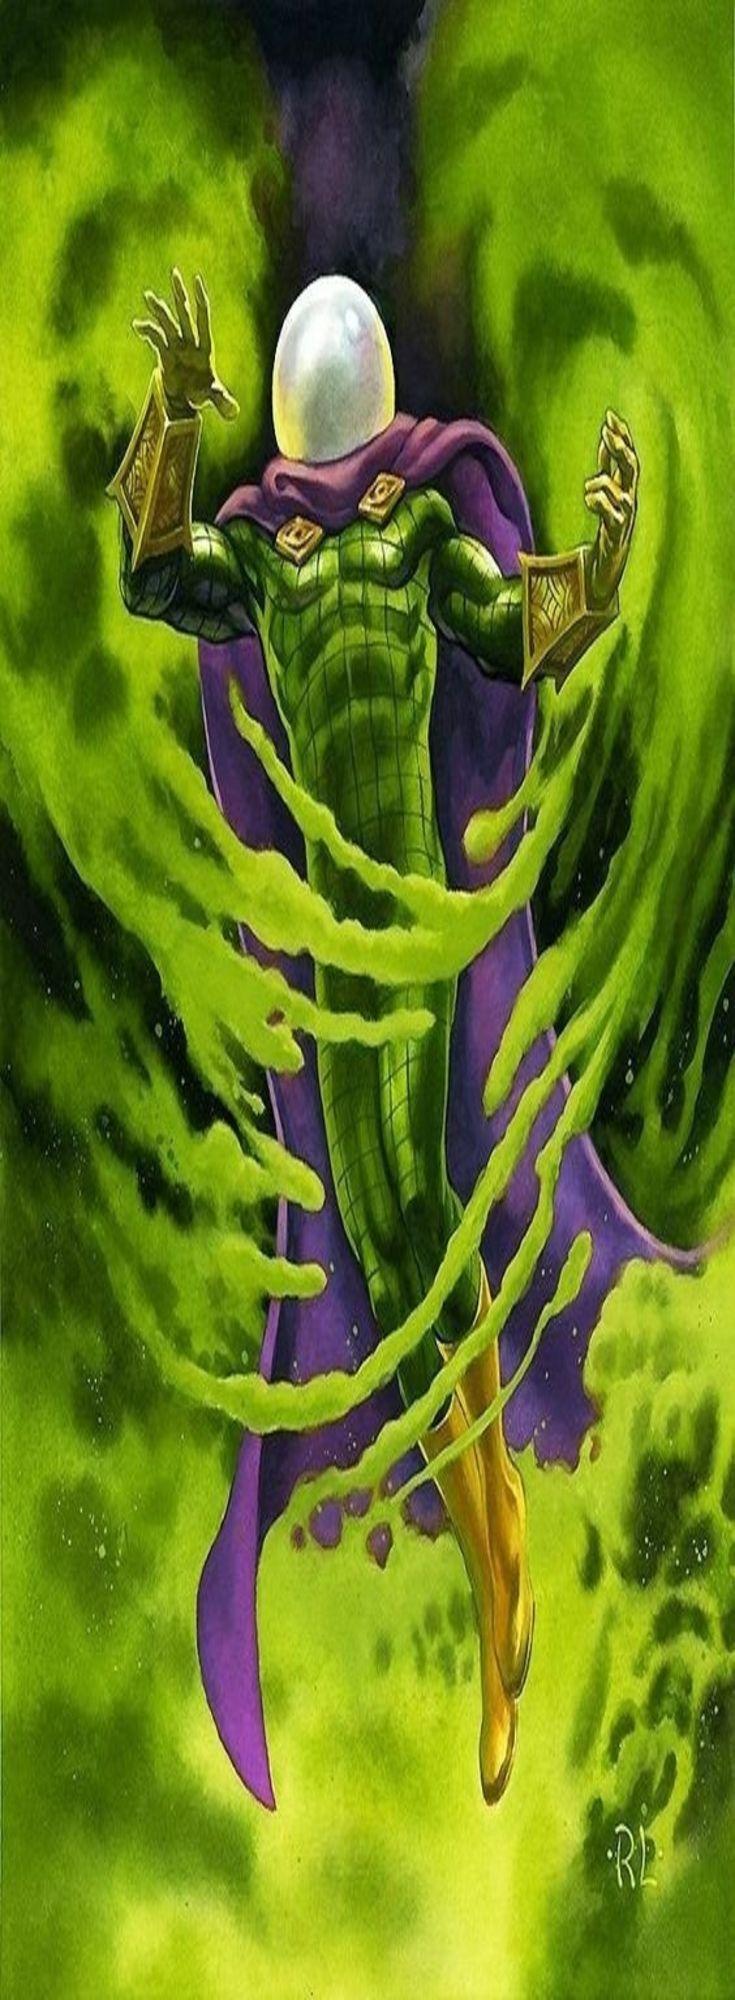 Best Marvel Mysterio Wallpaper